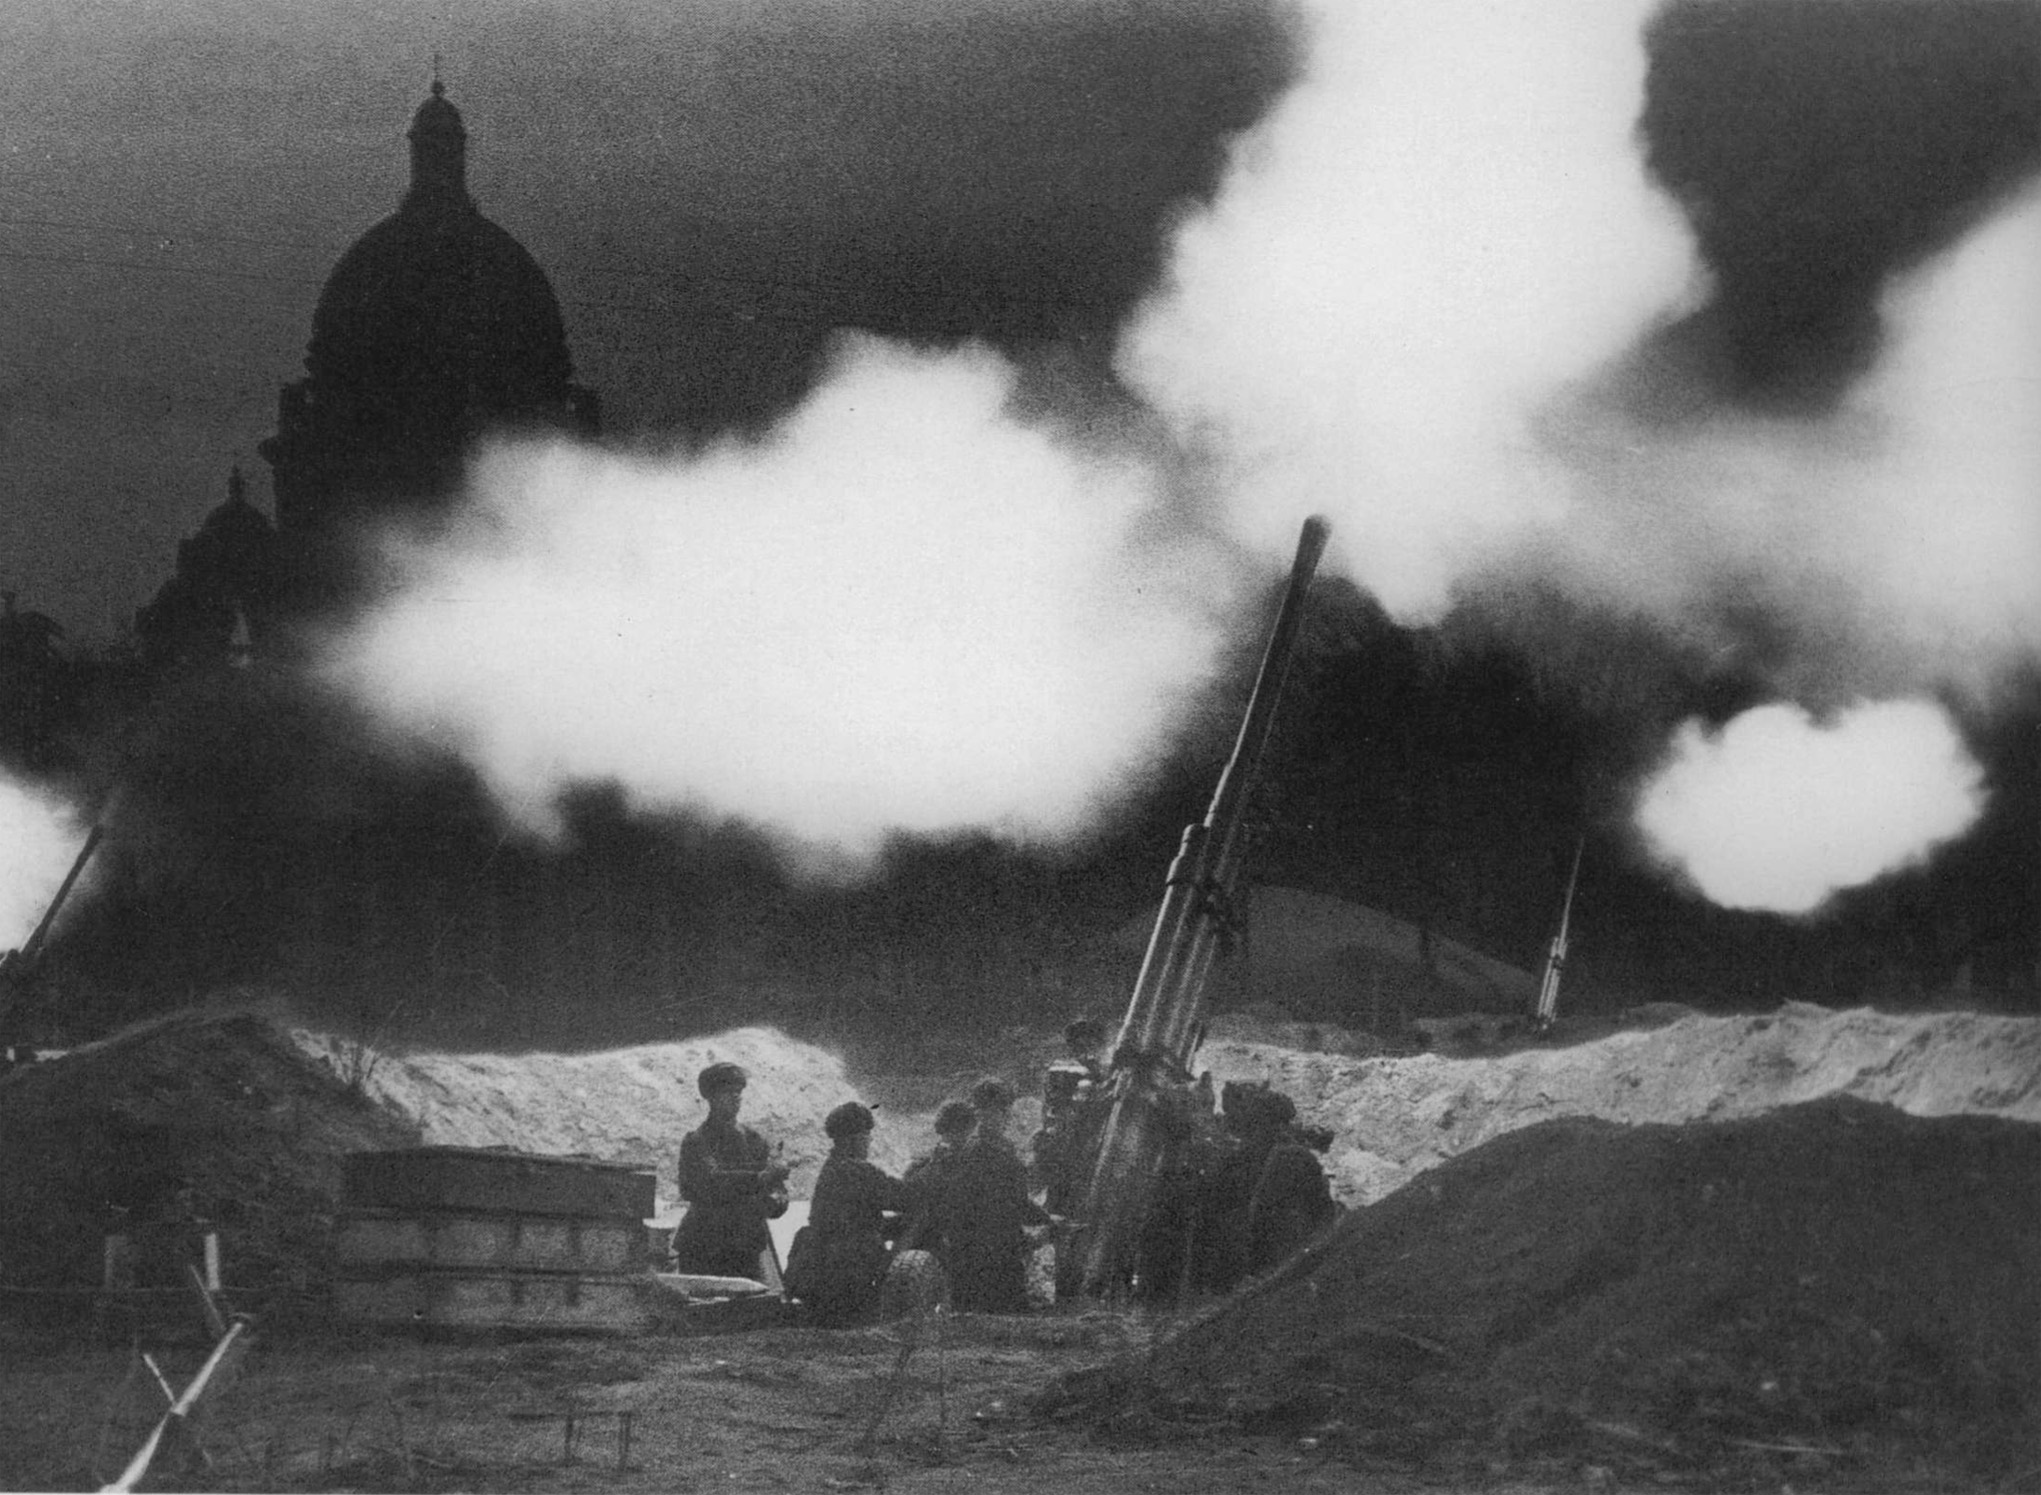 Baterías anti aéreas disparan durante el sitio de Leningrado en 1941.